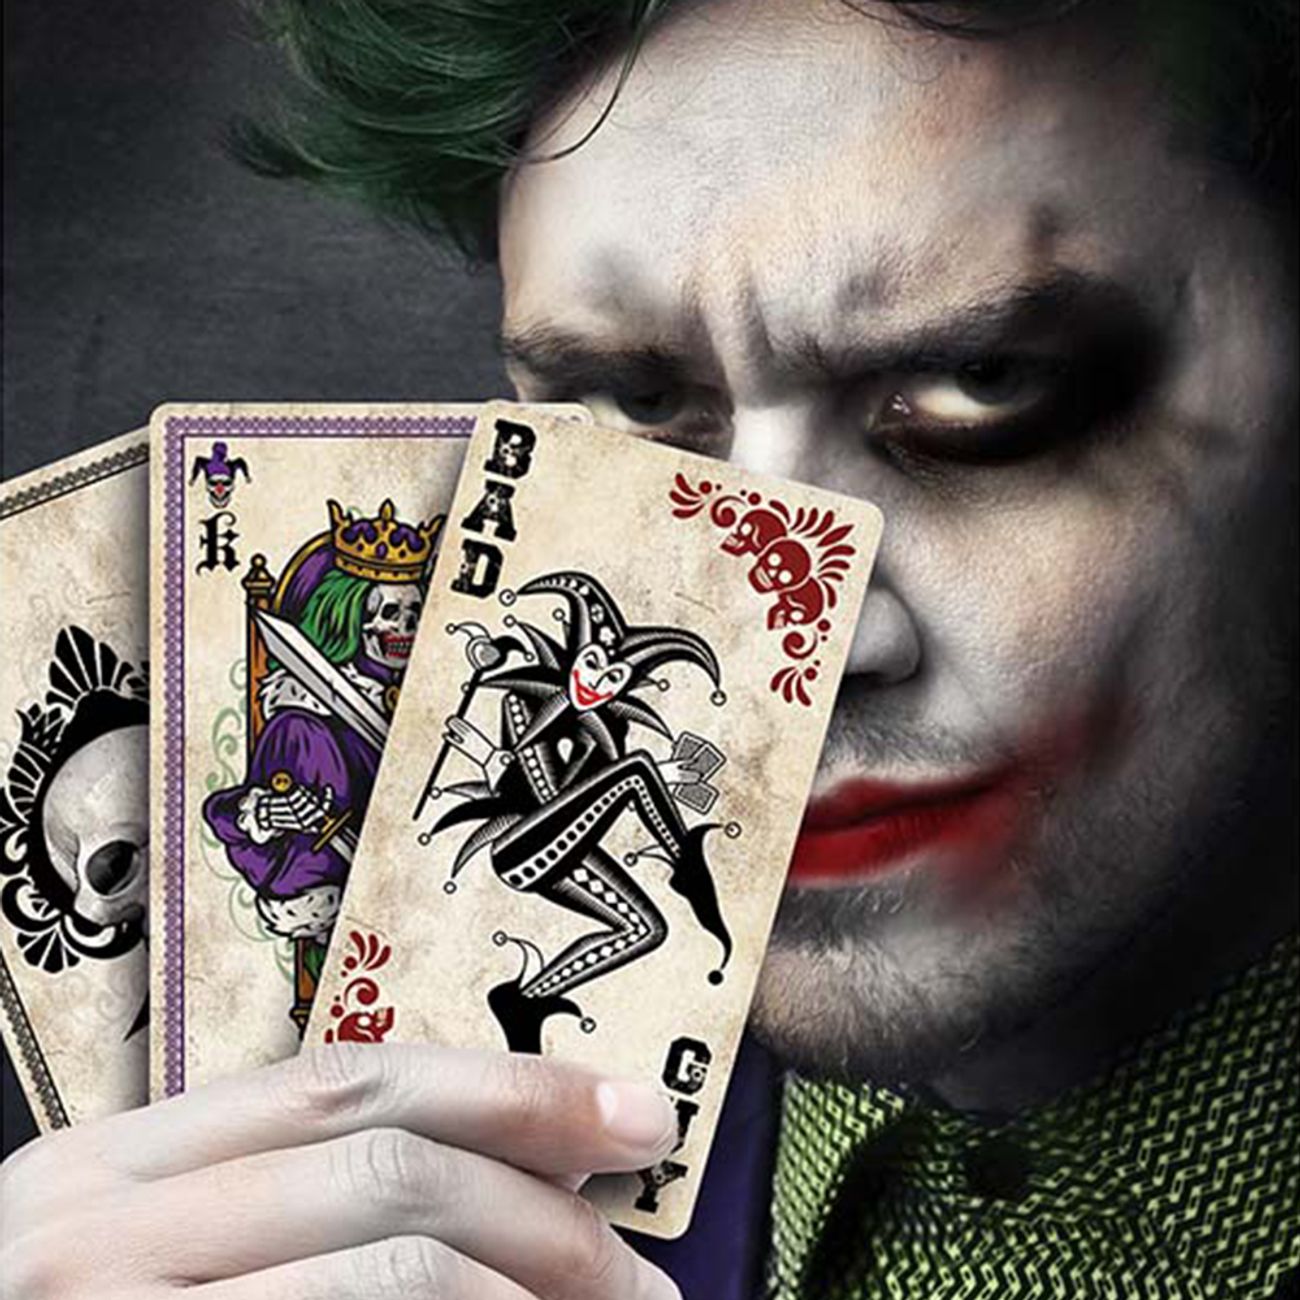 spelkort-evil-joker-89290-1